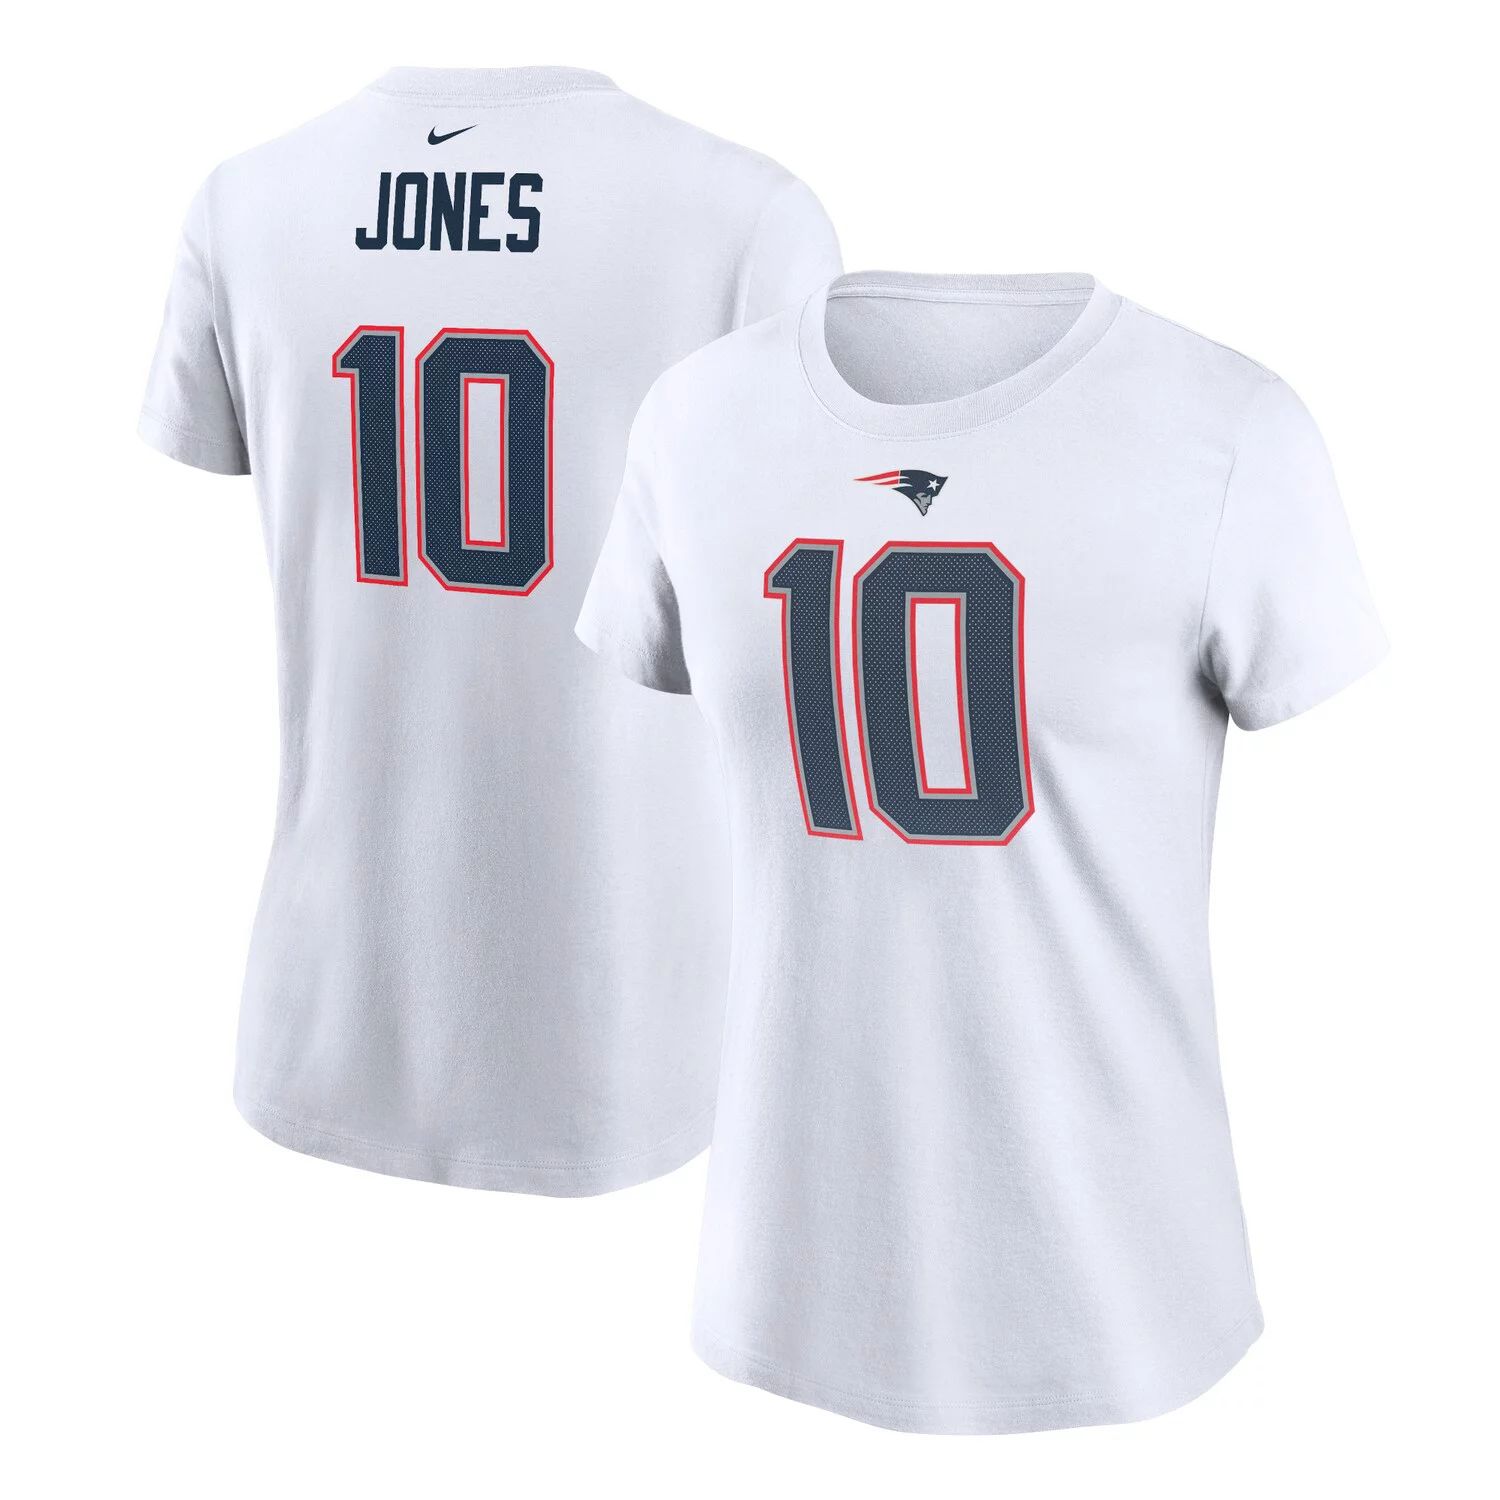 Женская белая футболка Nike Mac Jones New England Patriots с именем и номером игрока Nike